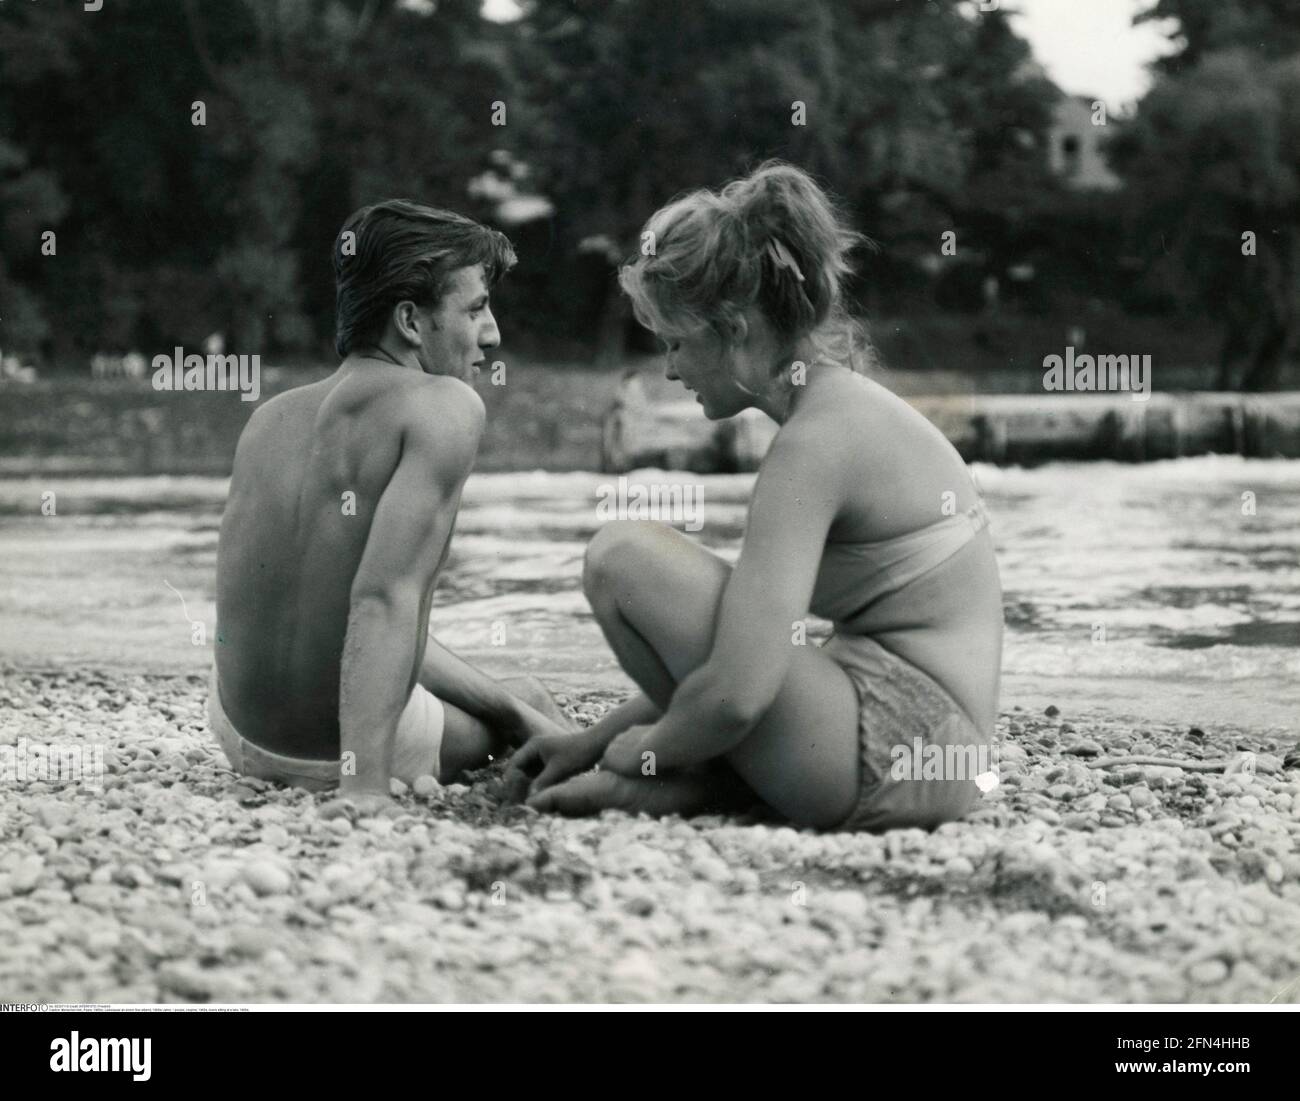 Personnes, couples, années 1960, amateurs assis à un lac, années 1960, DROITS-SUPPLÉMENTAIRES-AUTORISATION-INFO-NON-DISPONIBLE Banque D'Images